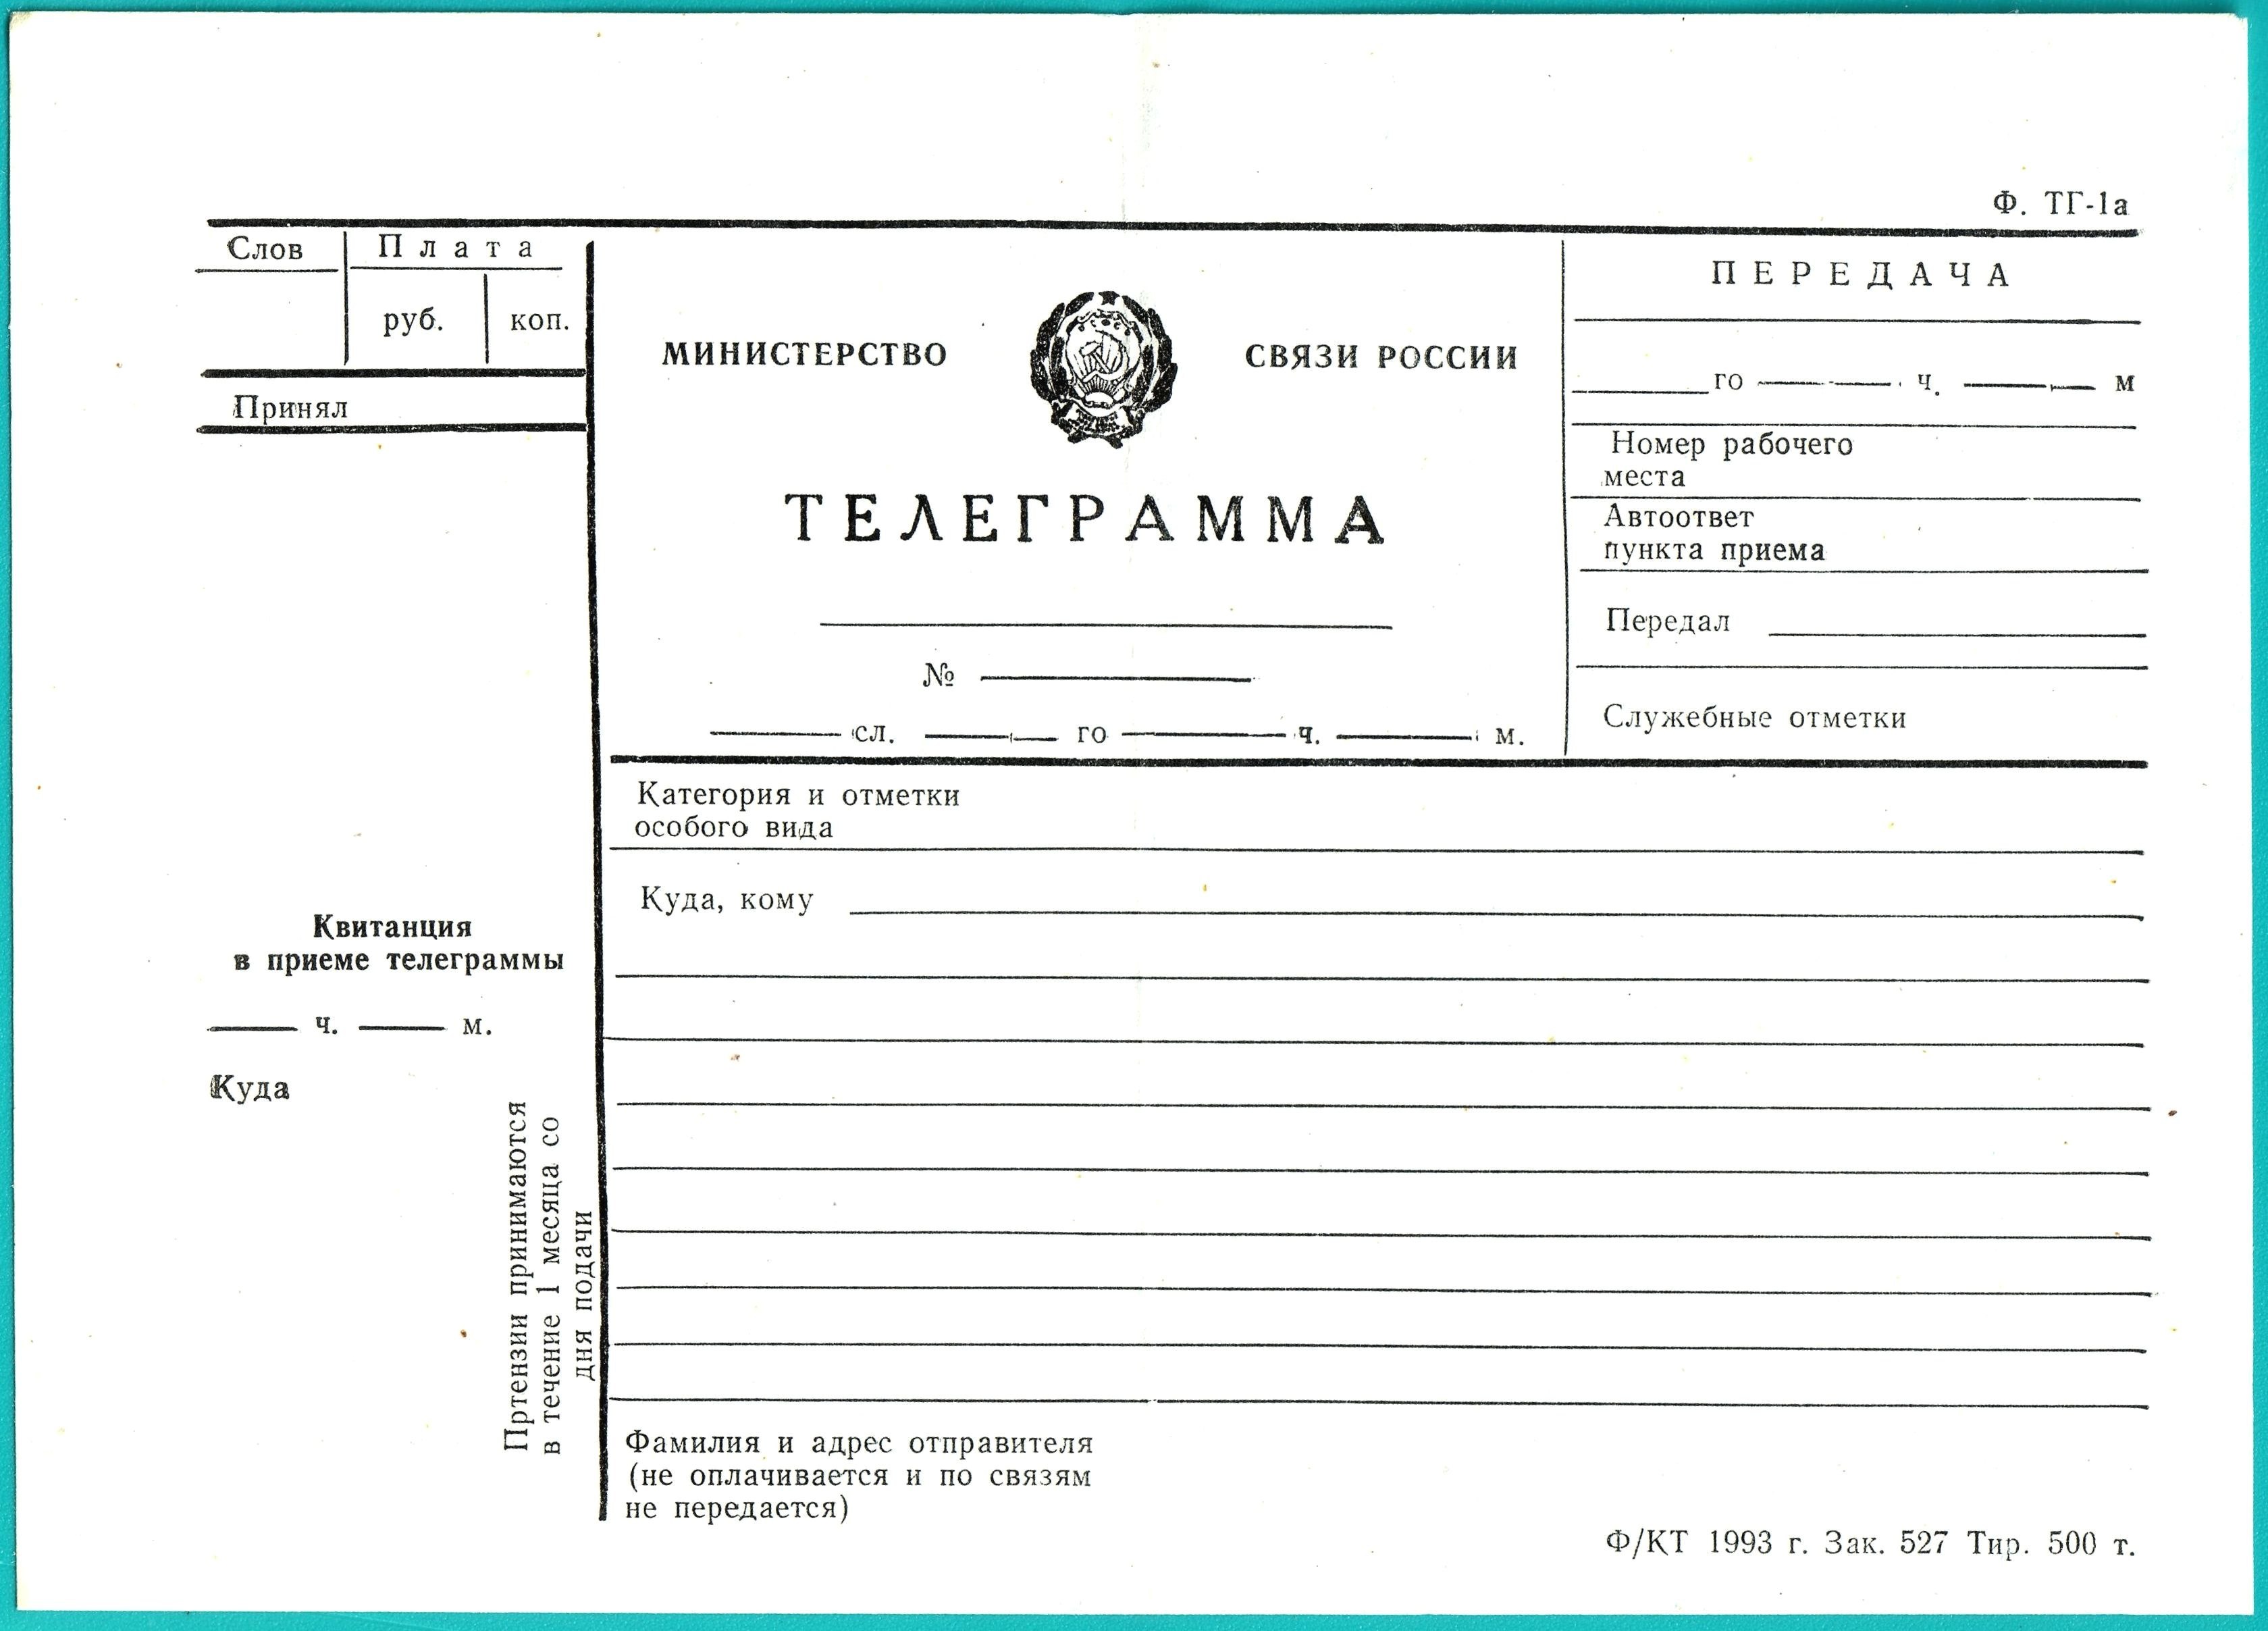 Русский язык как написать телеграмму фото 4